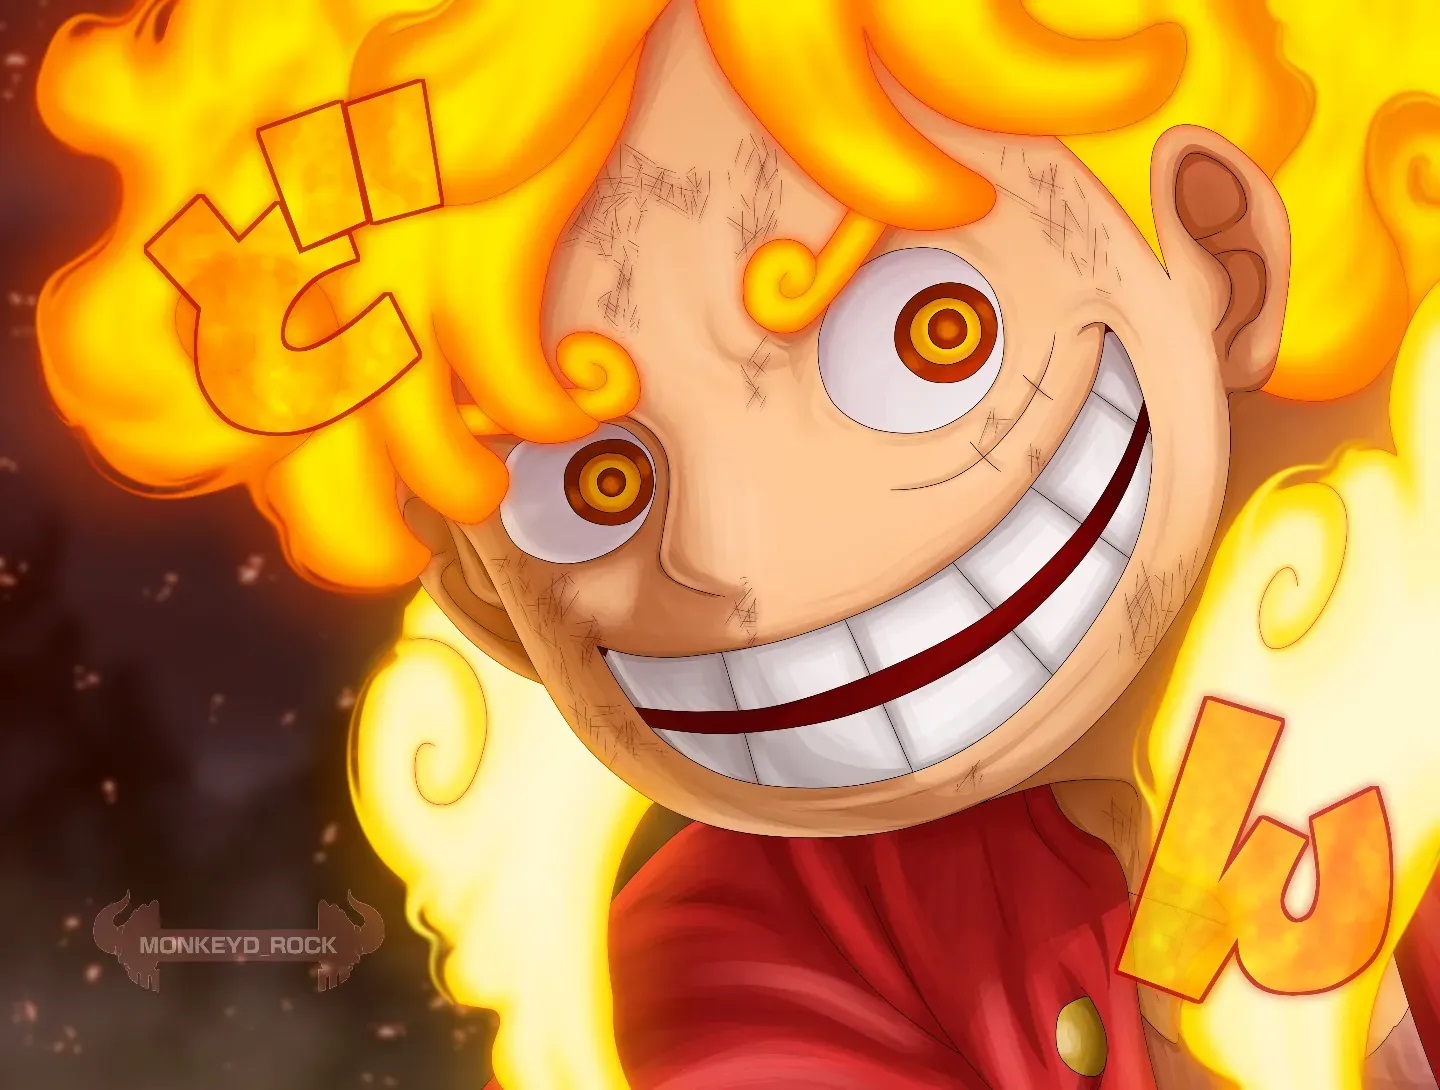 Colorização do mangá 1044 de One Piece por @monkeyd_rock.